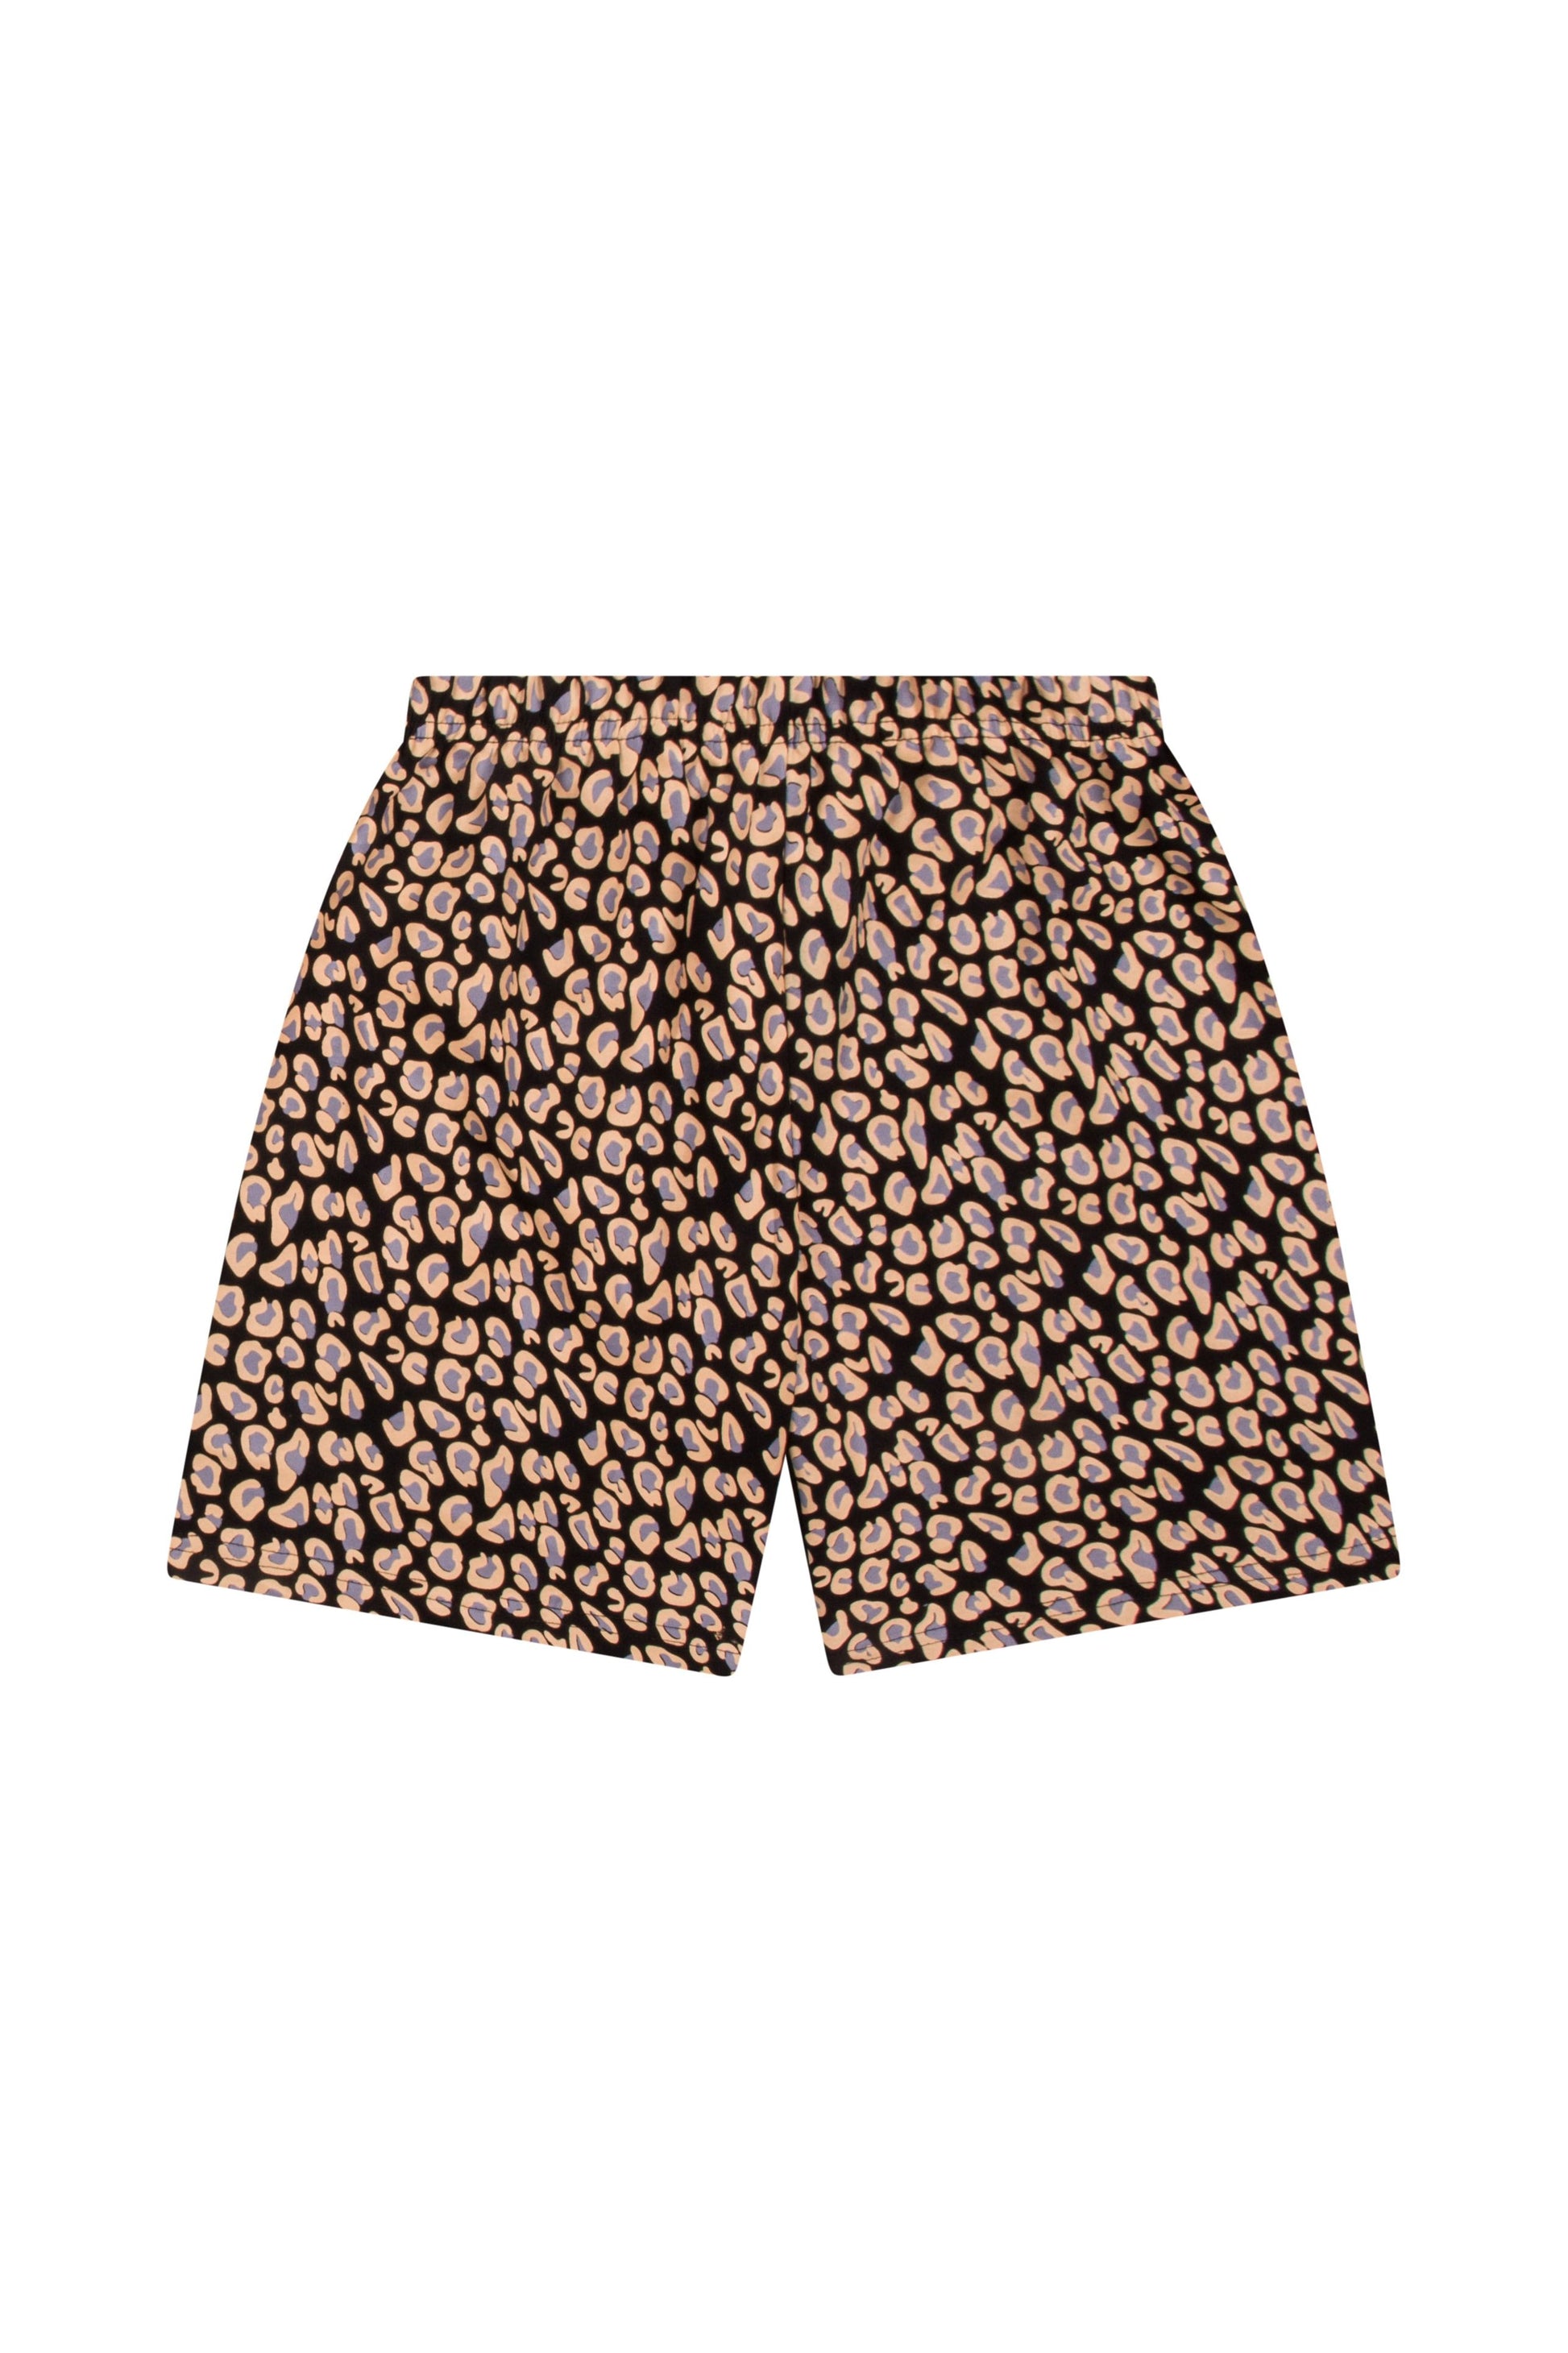 Cheetah Animal Print Short Pyjamas - Pyjamas.com